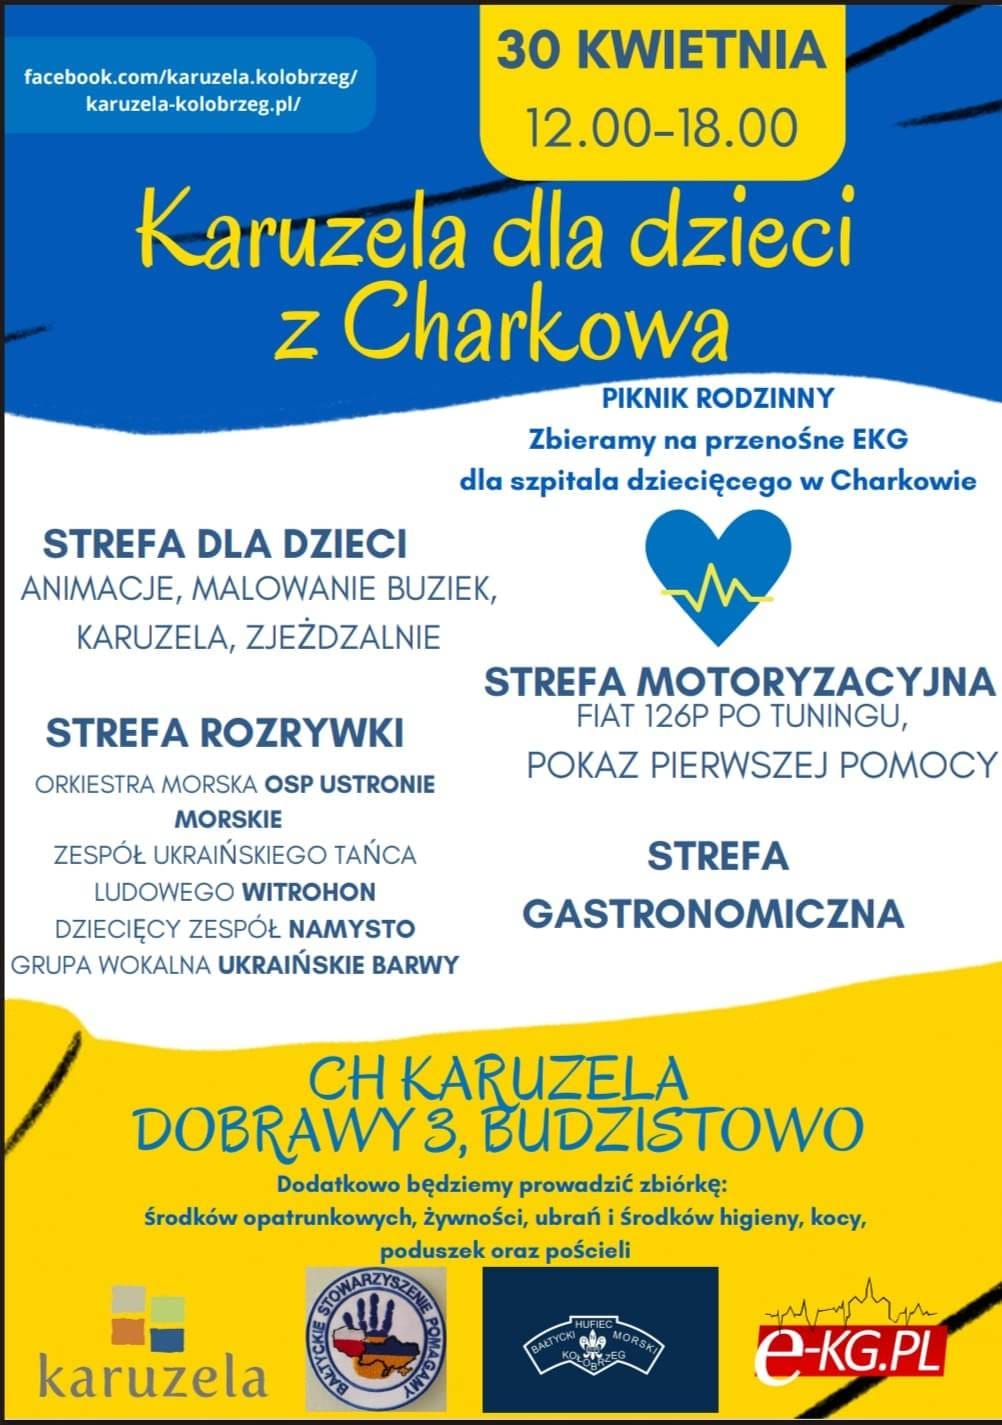 zkolne Koło Wolontariatu zaprasza do udziału w zbiórce funduszy na zakup sprzętu EKG dla szpitala dziecięcego w Charkowie